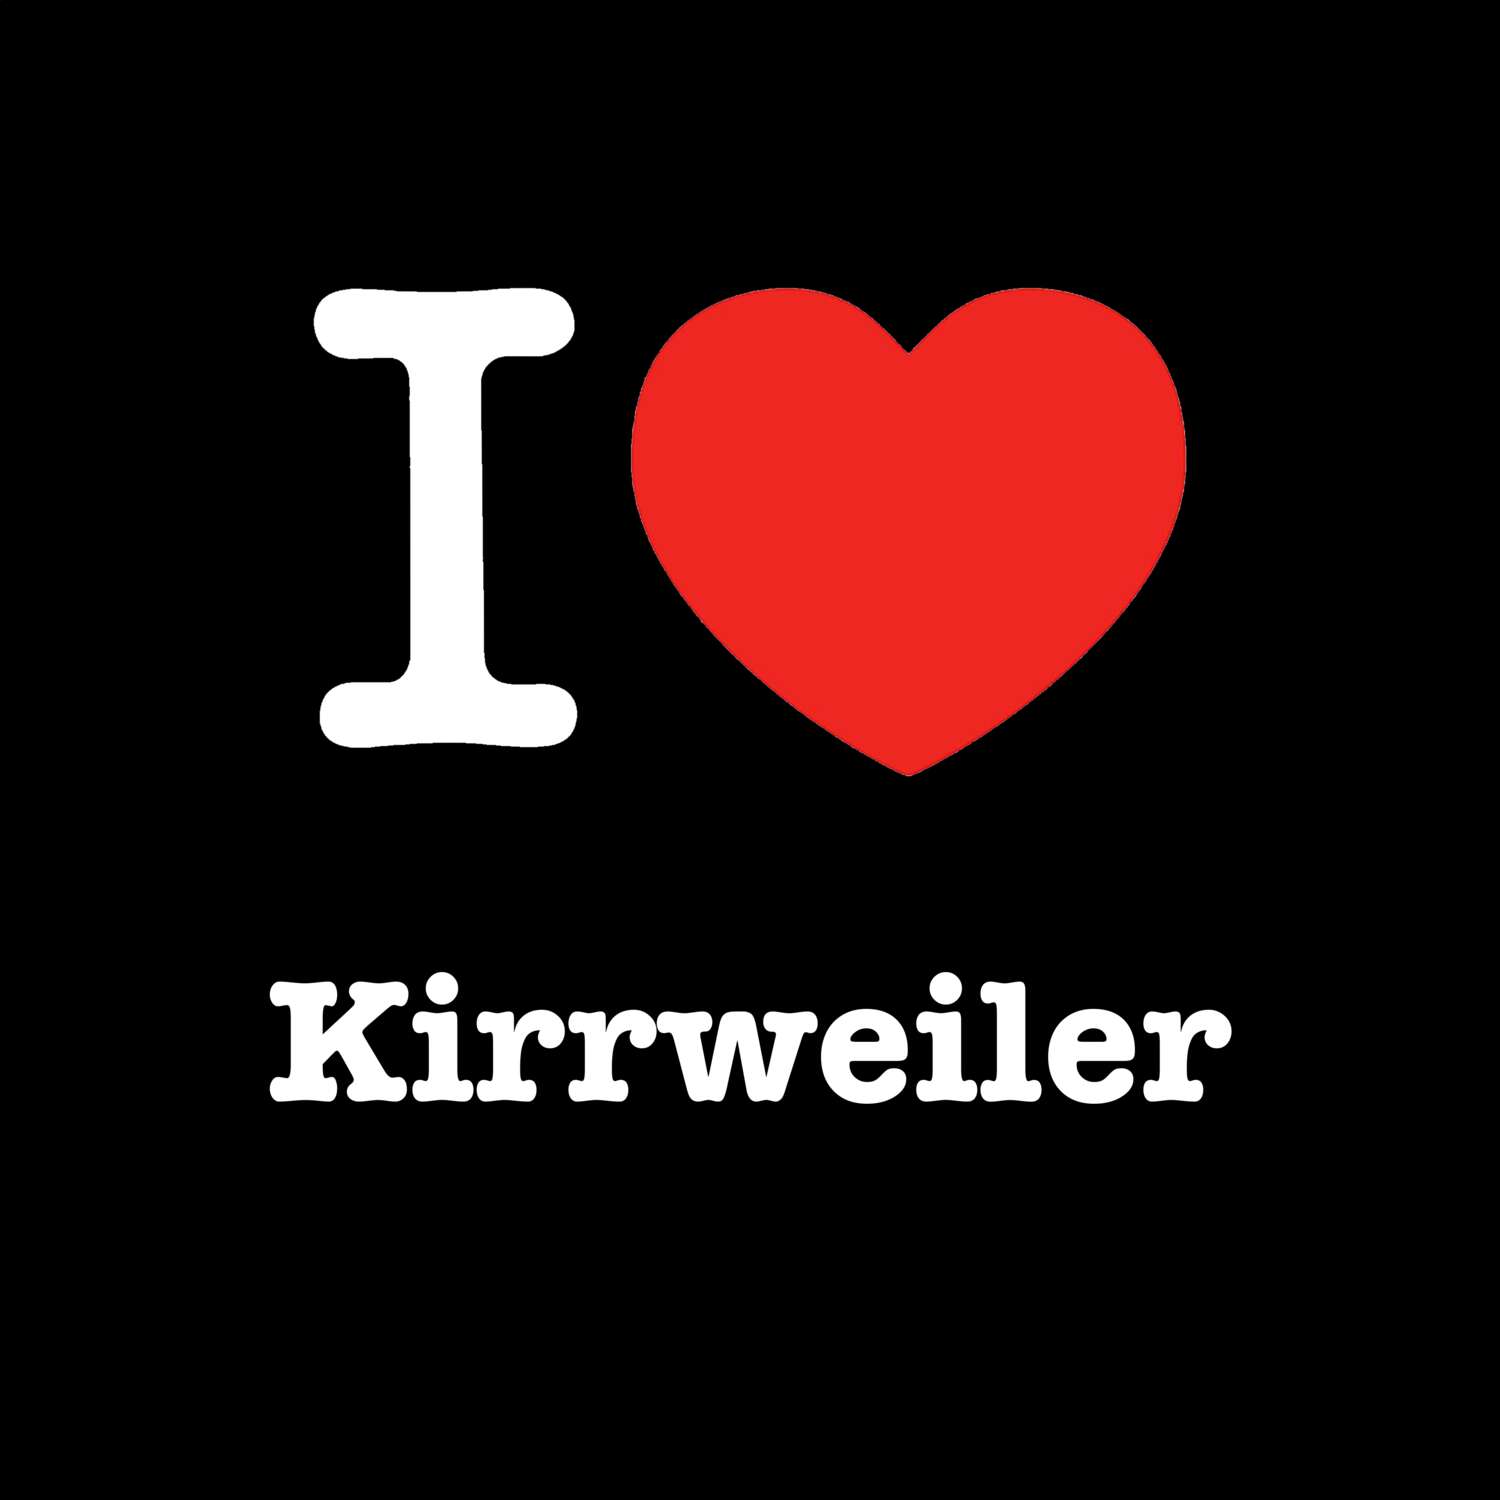 Kirrweiler T-Shirt »I love«